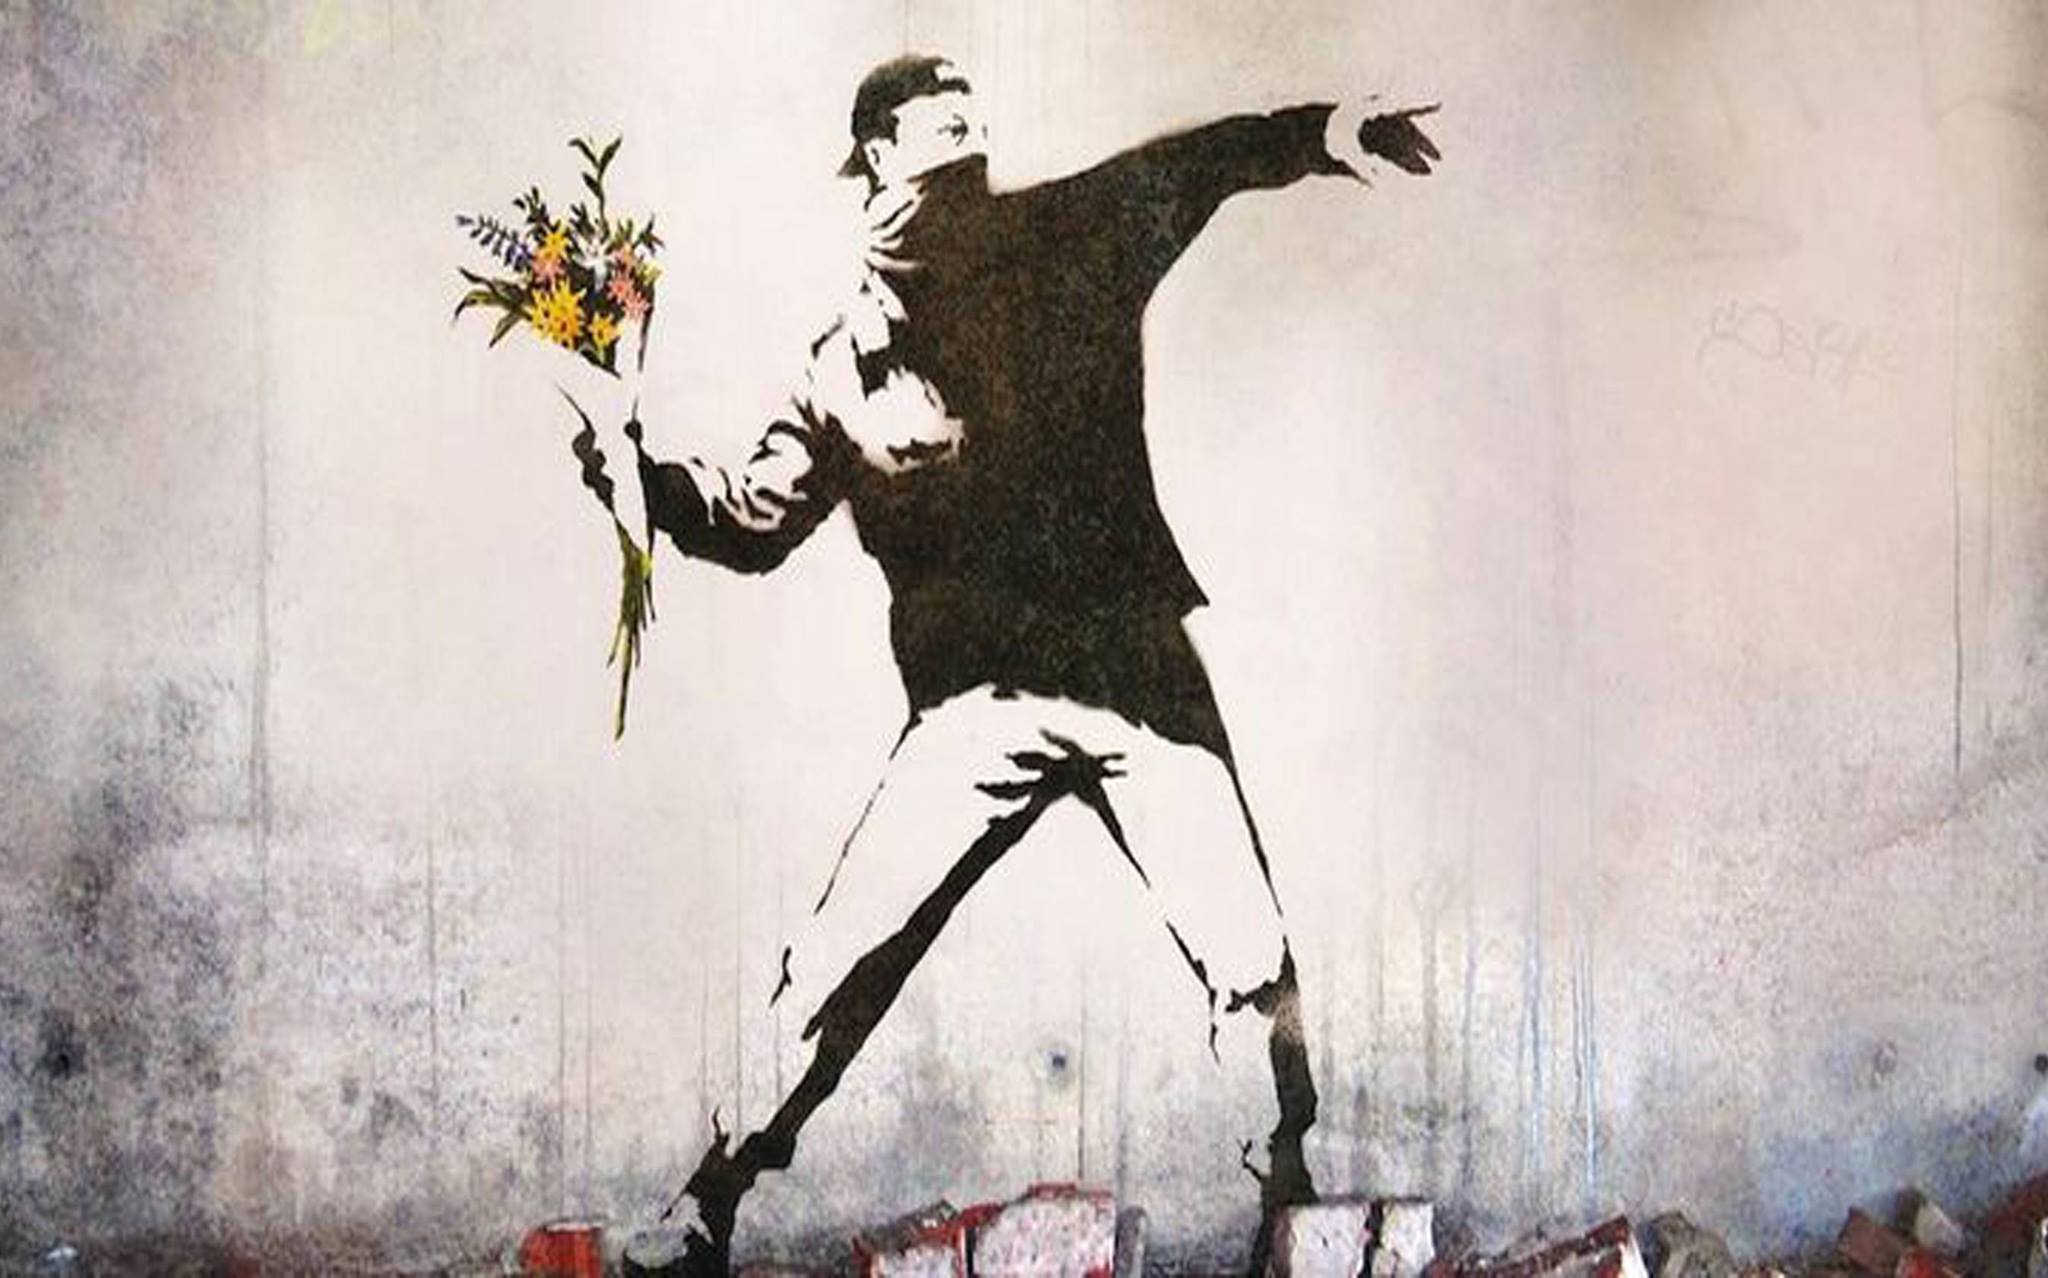 Se tutti i vandali fossero come Banksy!